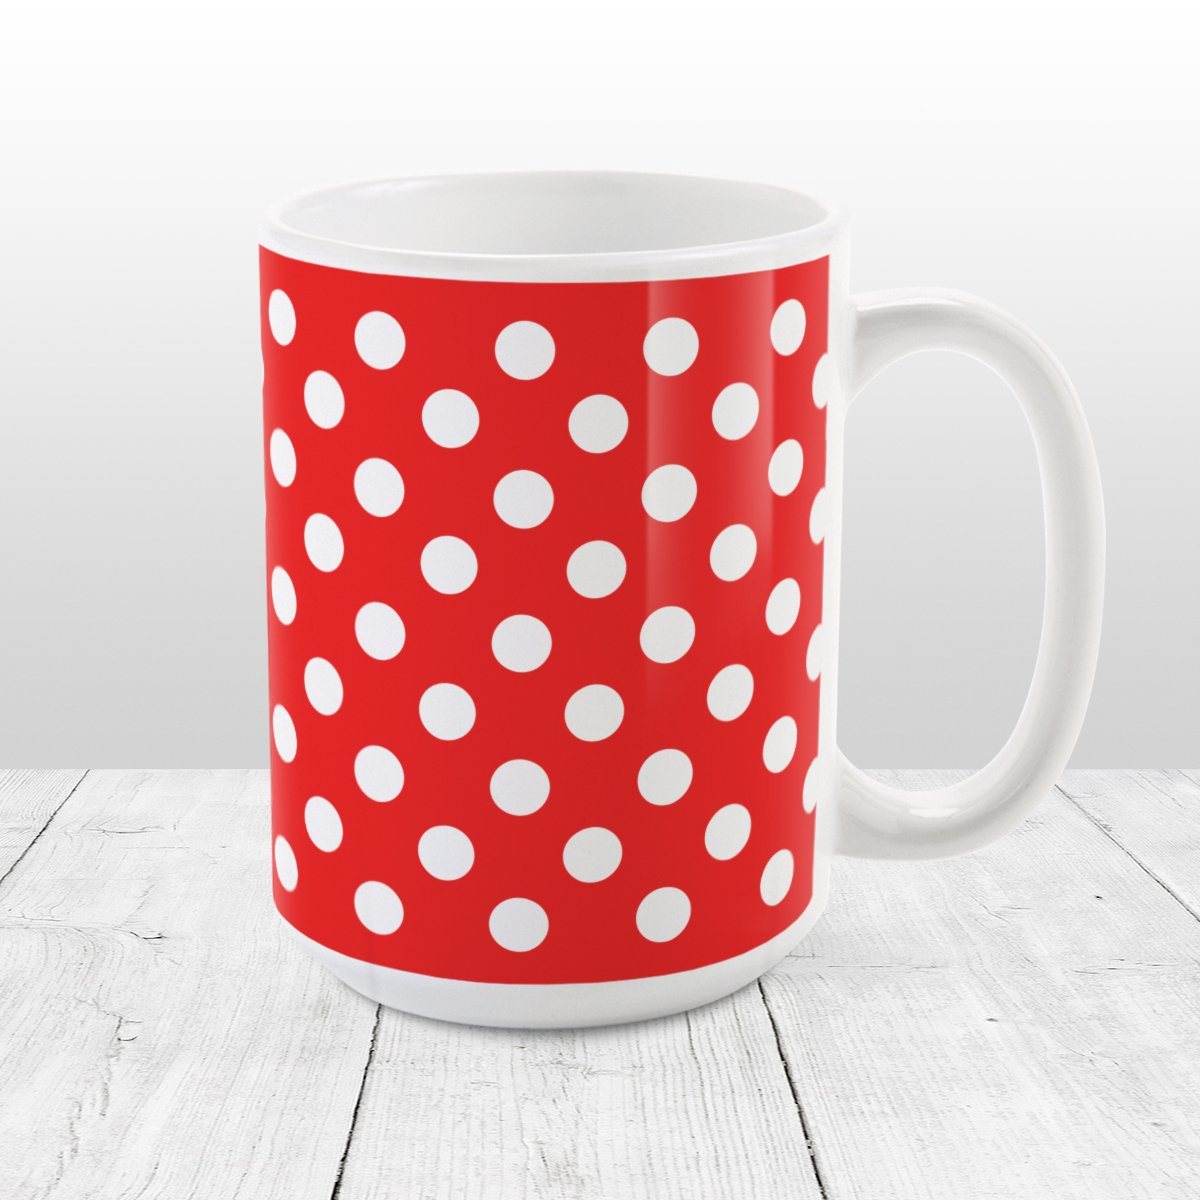 Red Polka Dot Mug at Amy's Coffee Mugs